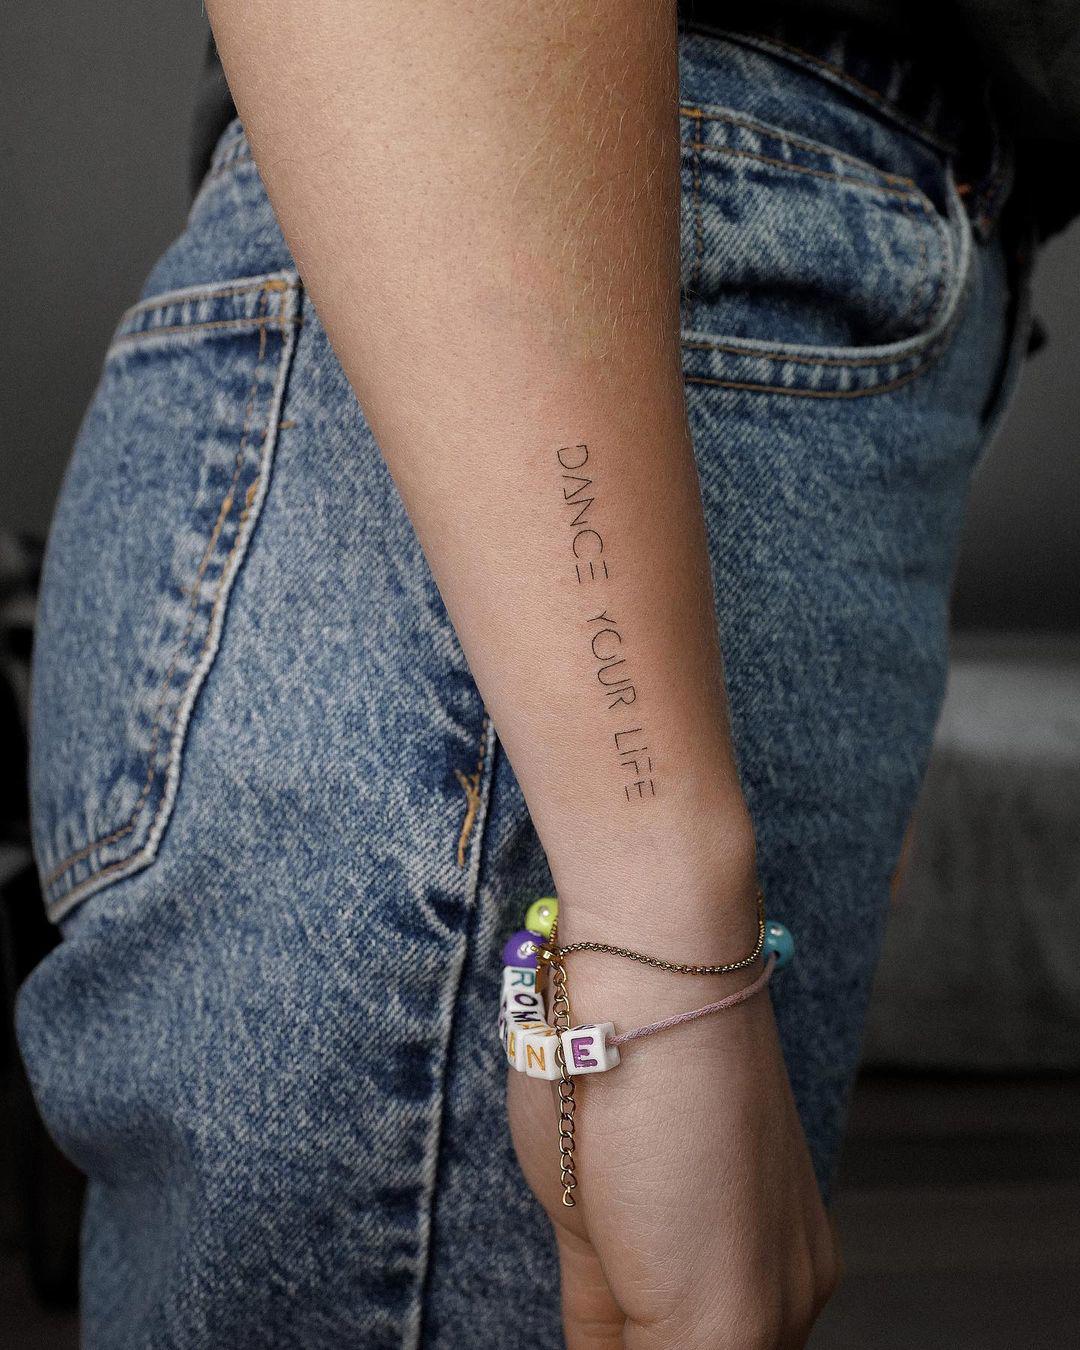 Tatuaje con letra sans serif en el antebrazo